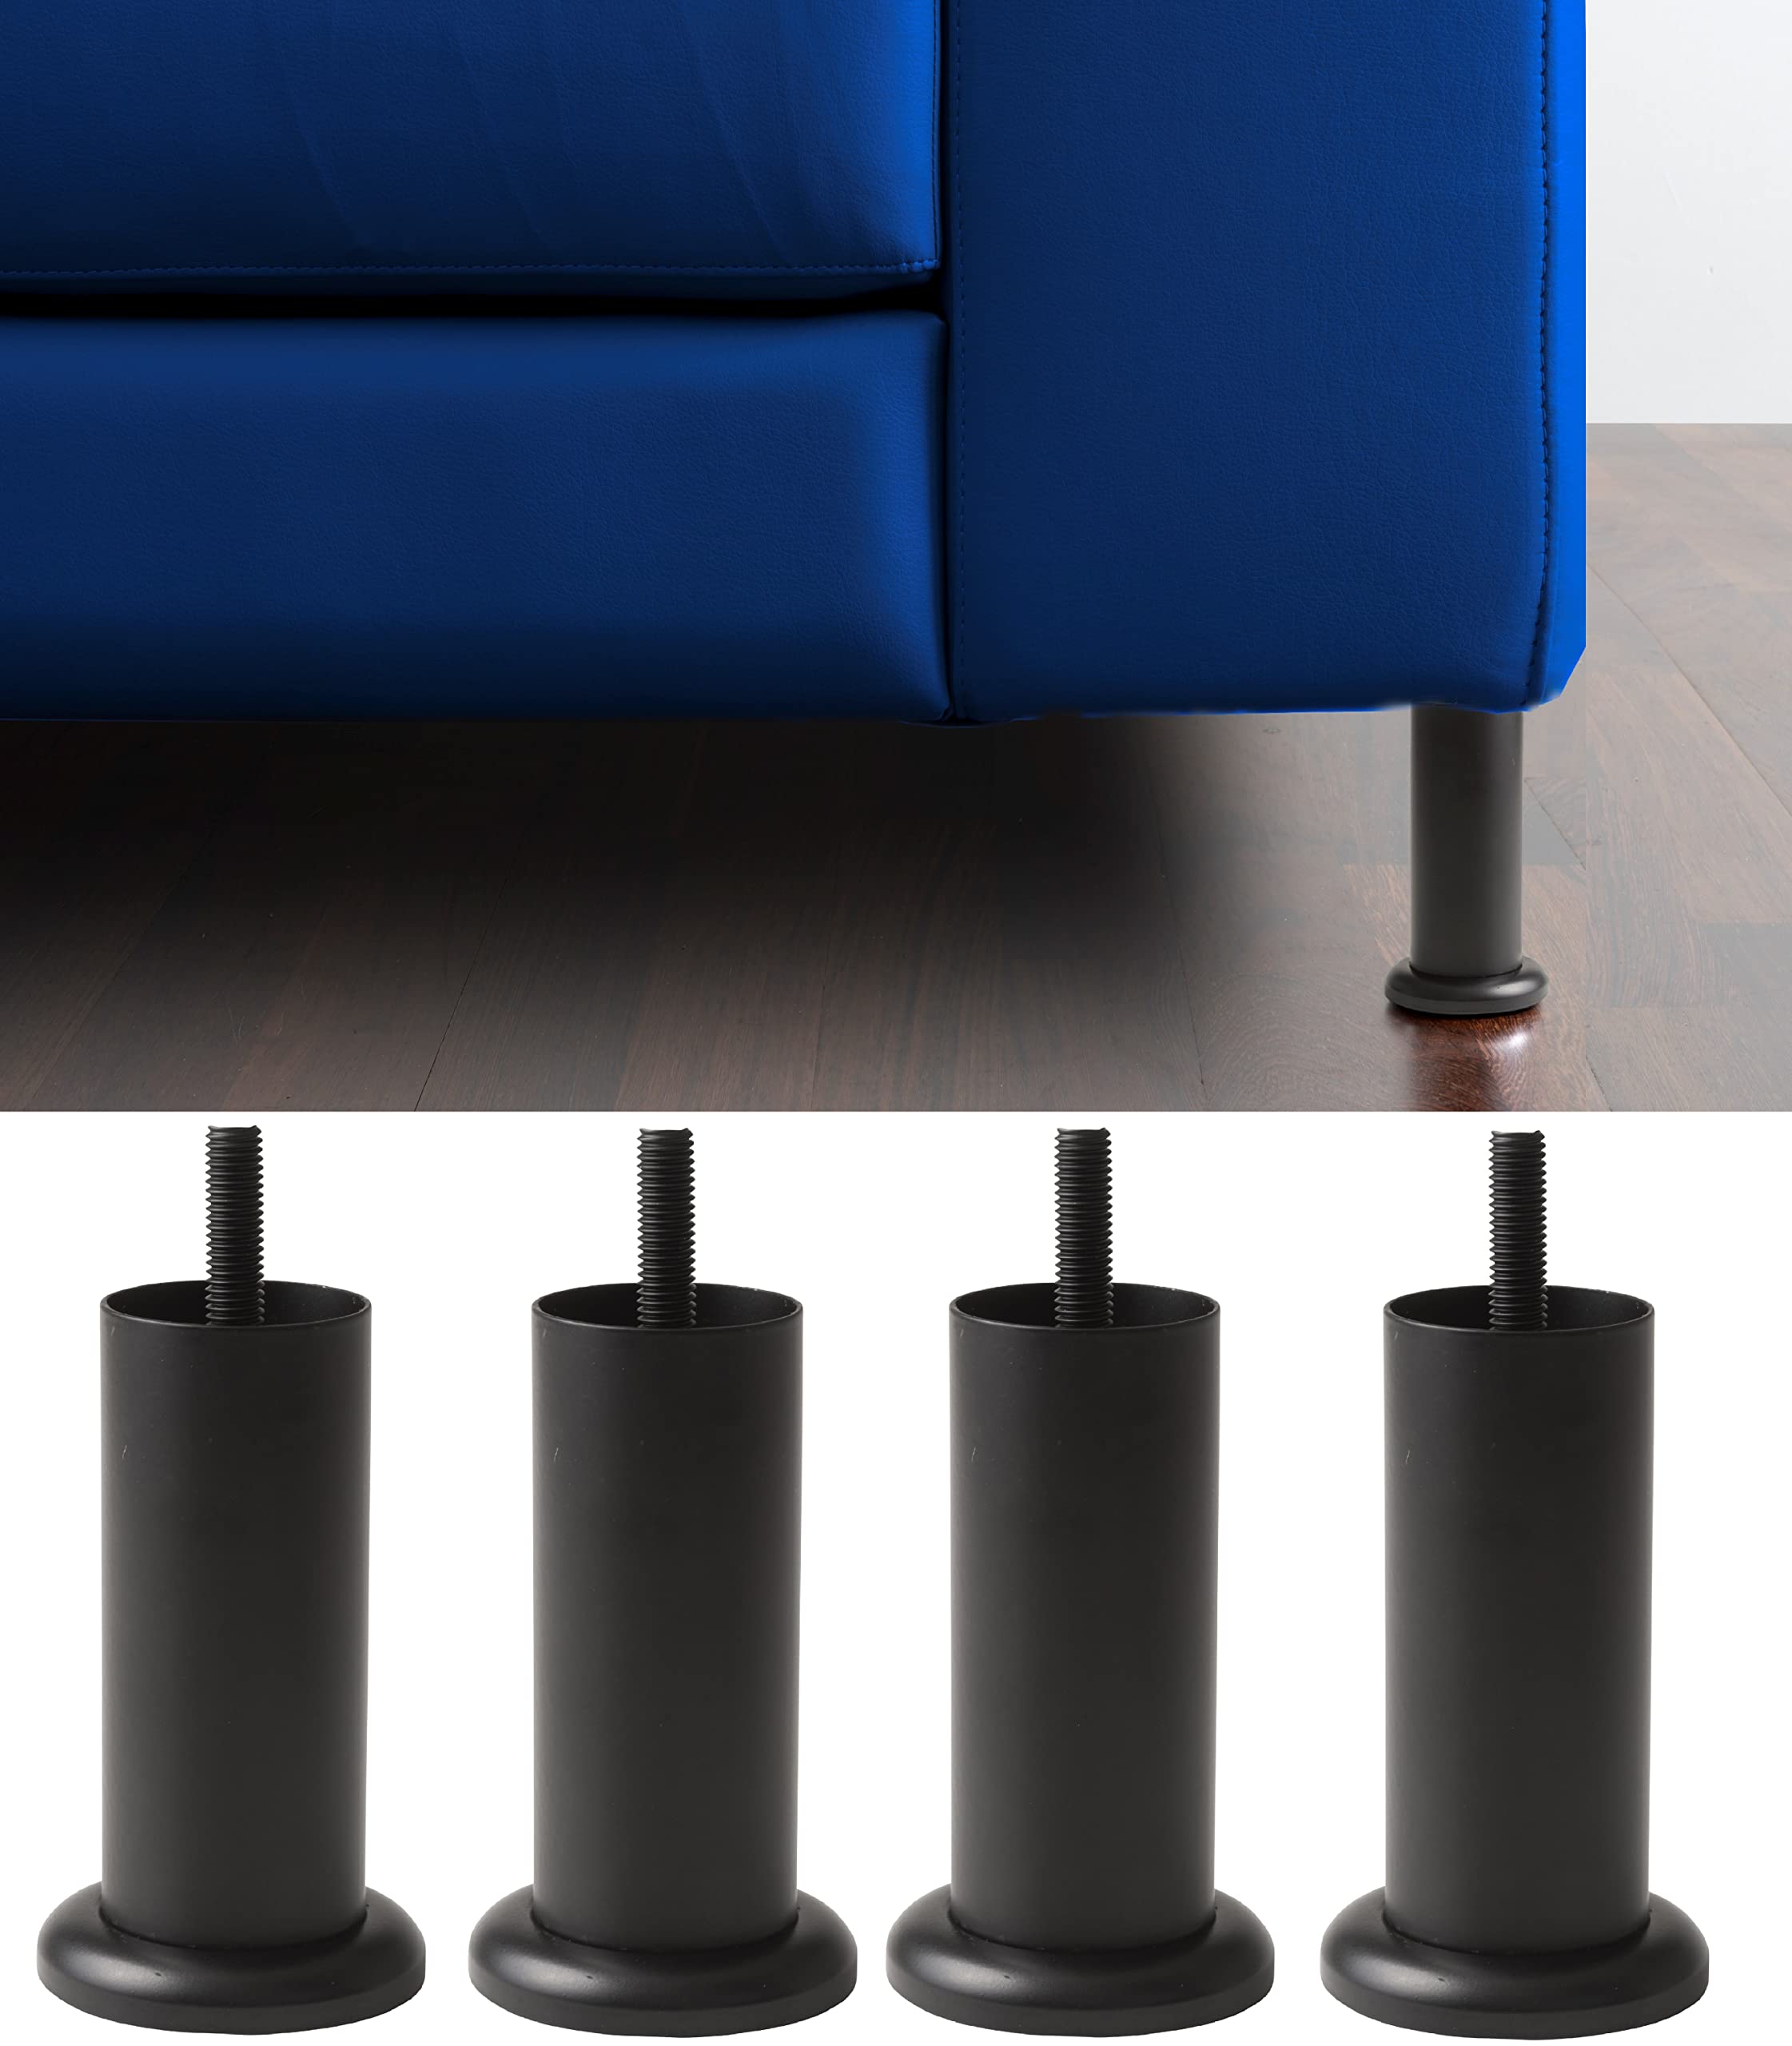 IPEA Füße für Möbel und Sofas Modell Aquamarina mit schwarzem Sockel – Set mit 4 Beinen aus Eisen – Minimales Design für Sessel und Schränke – Farbe Chrom – Höhe 120 mm